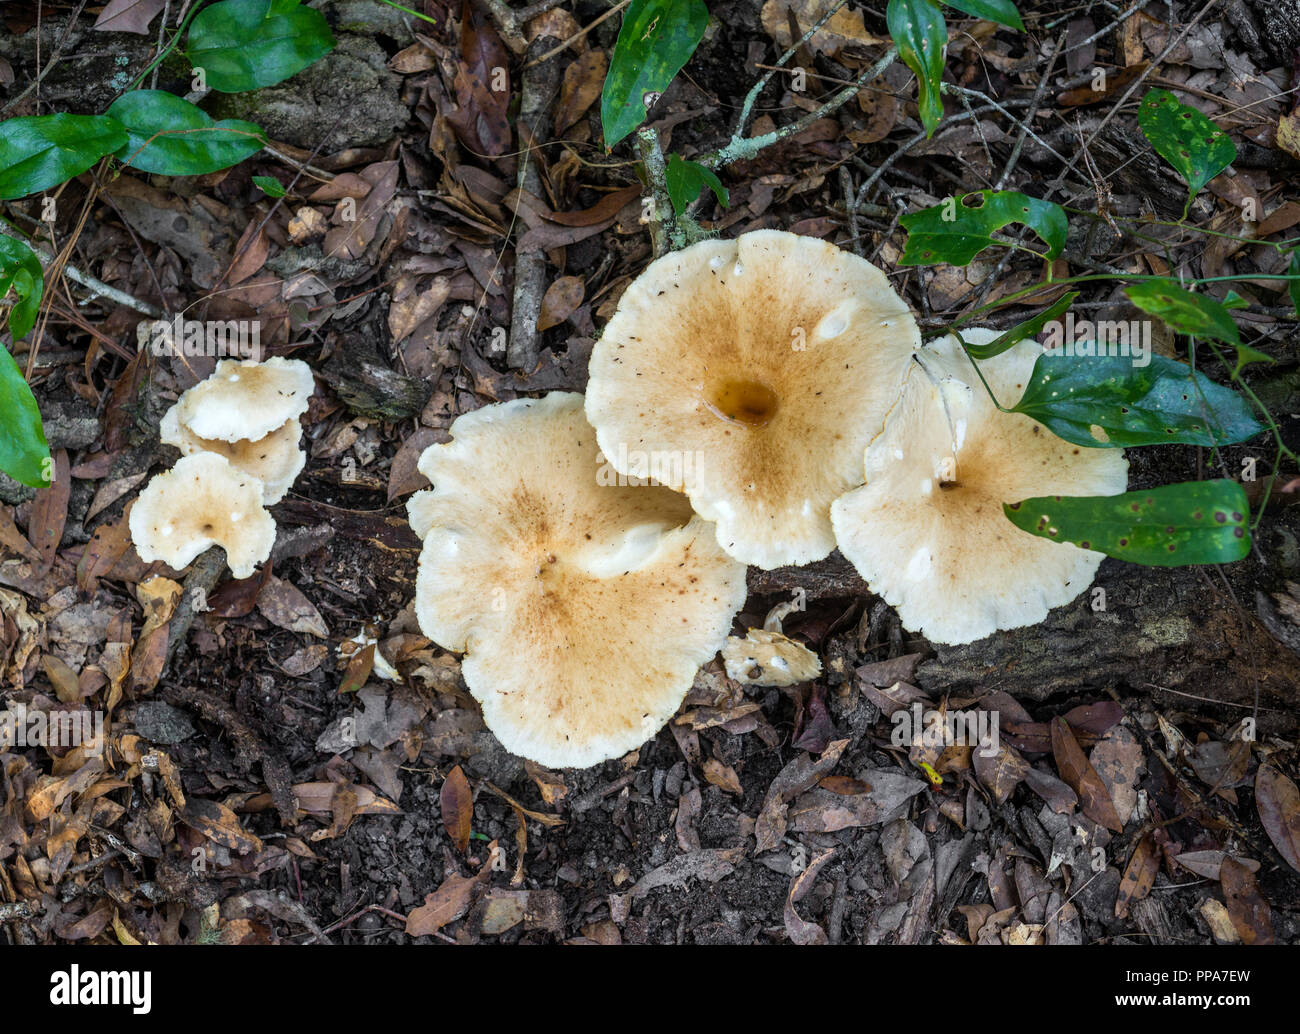 Große Weiße Pilze auf Waldboden in North Central Florida. Schafe Polypore - Albatrellus ovinus ein essbarer Pilz in Nordamerika gefunden. Stockfoto